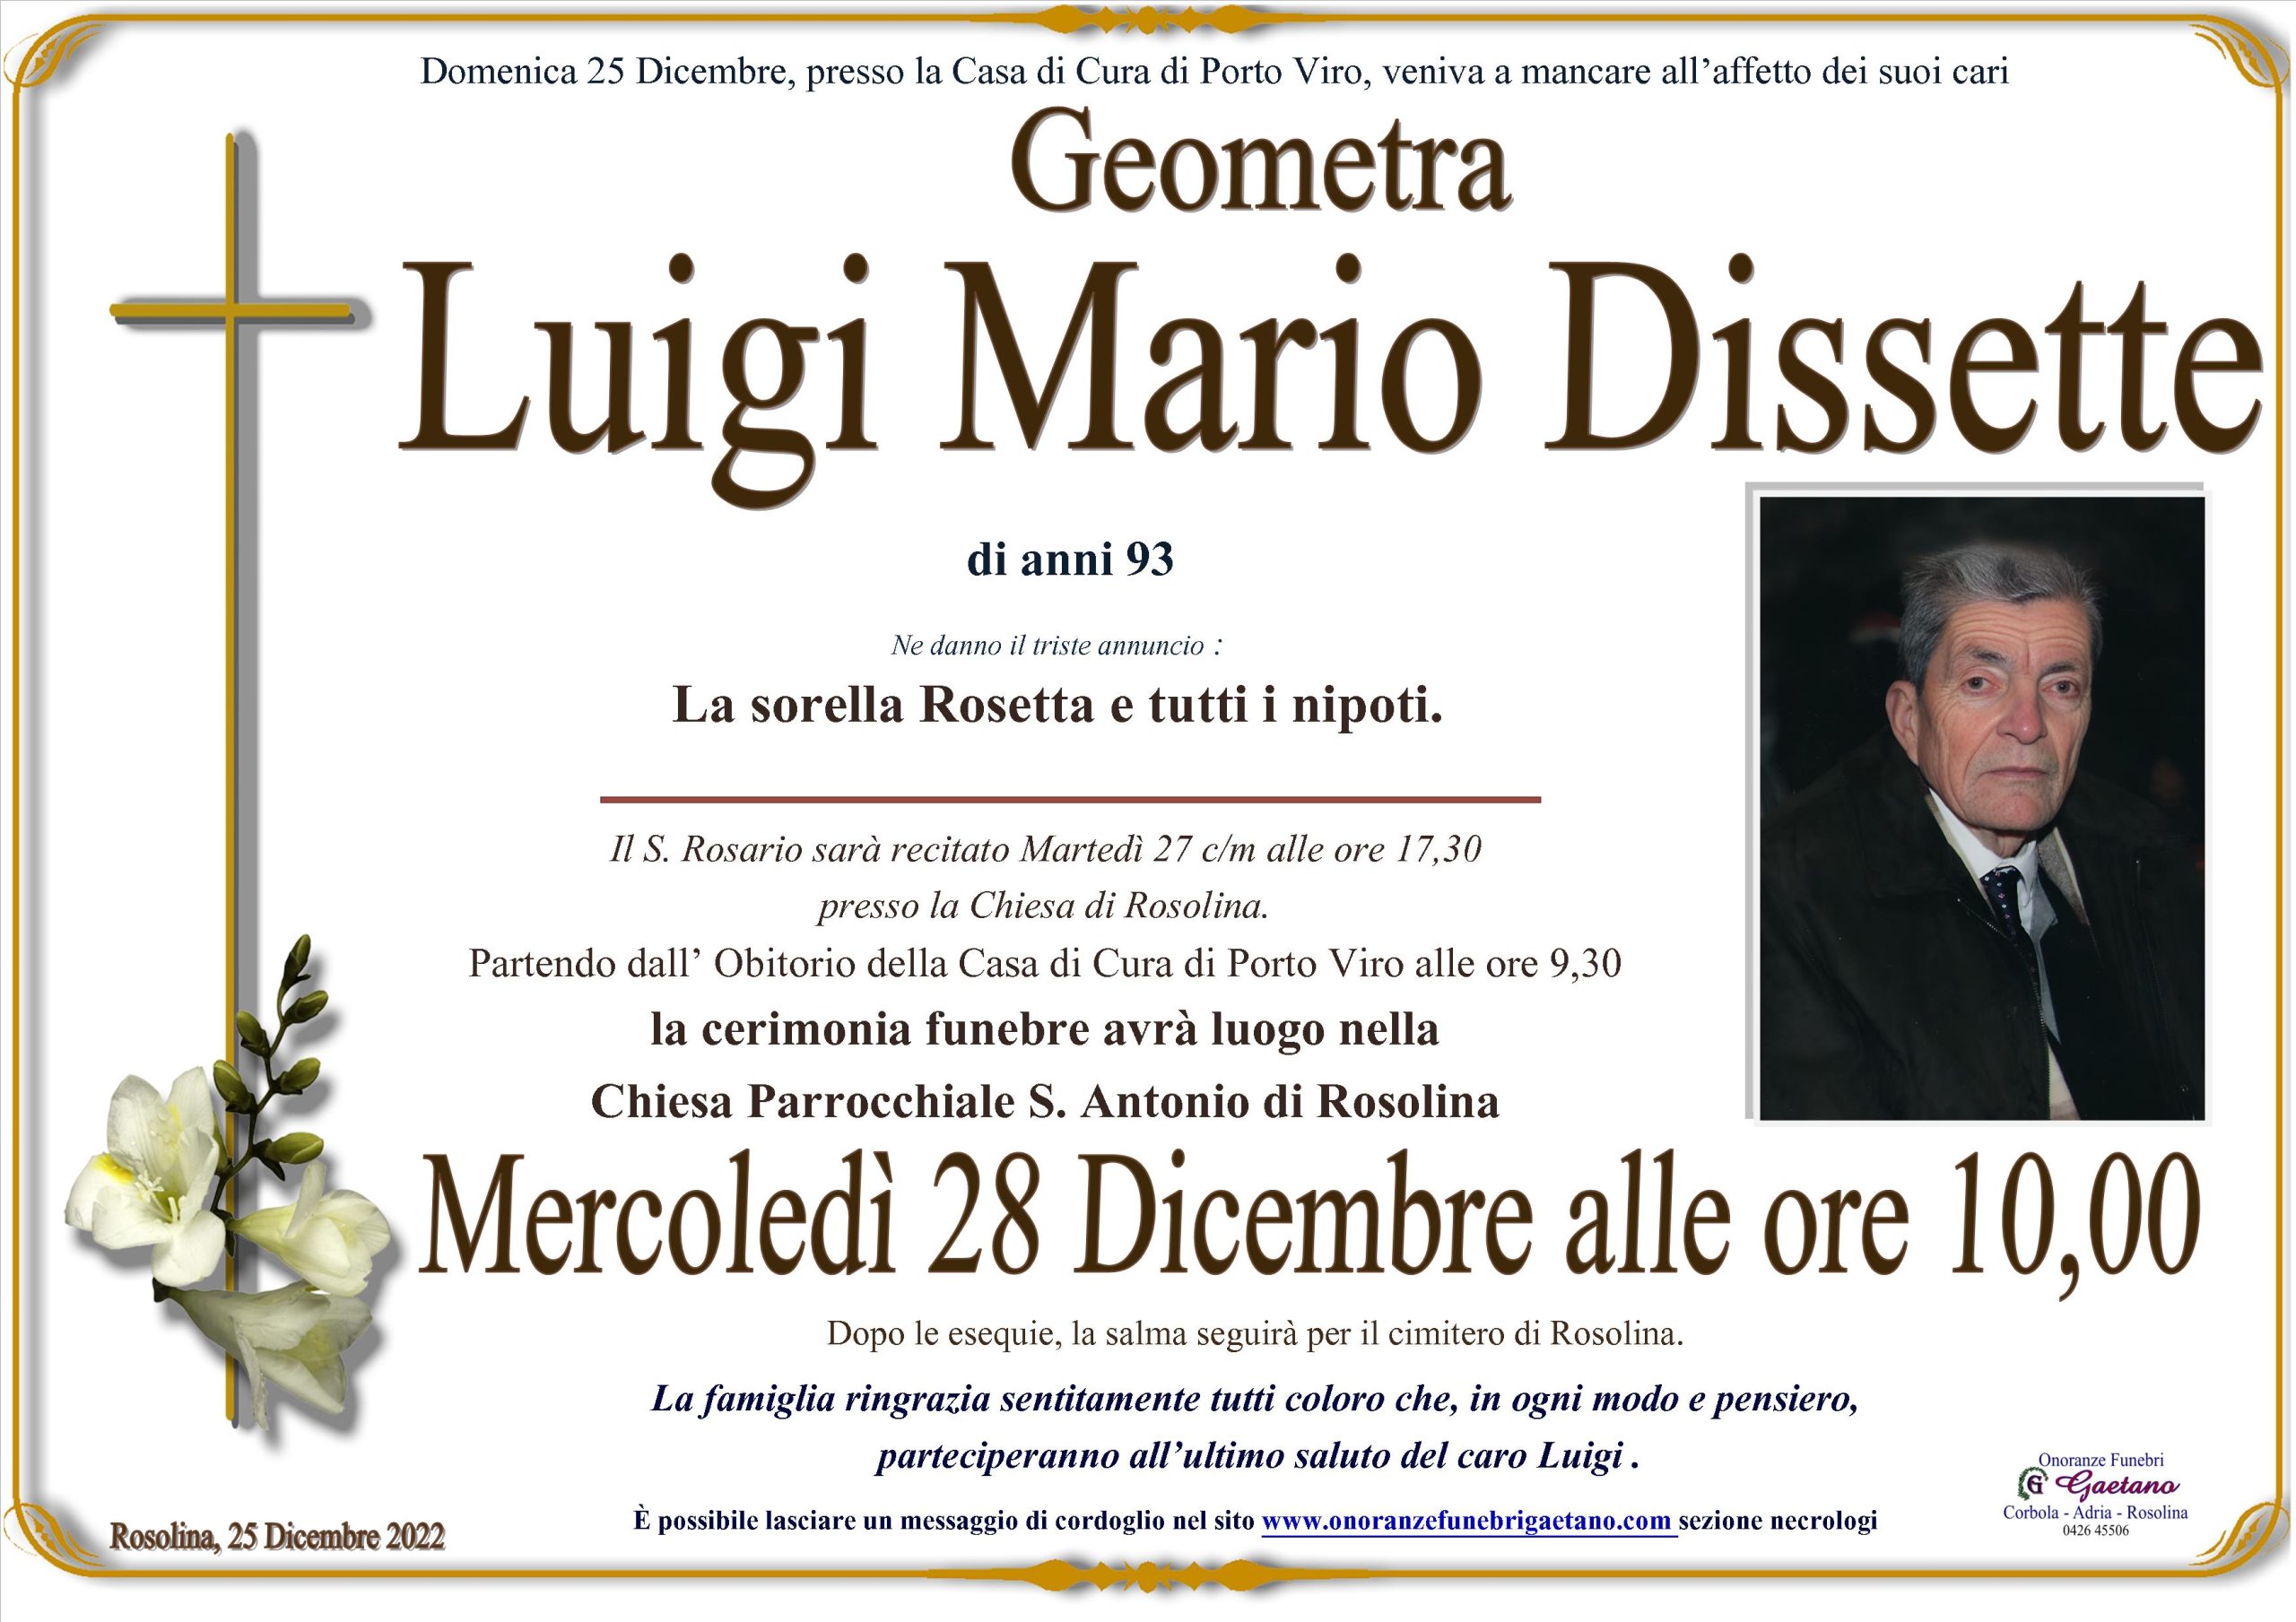 Luigi Mario Dissette